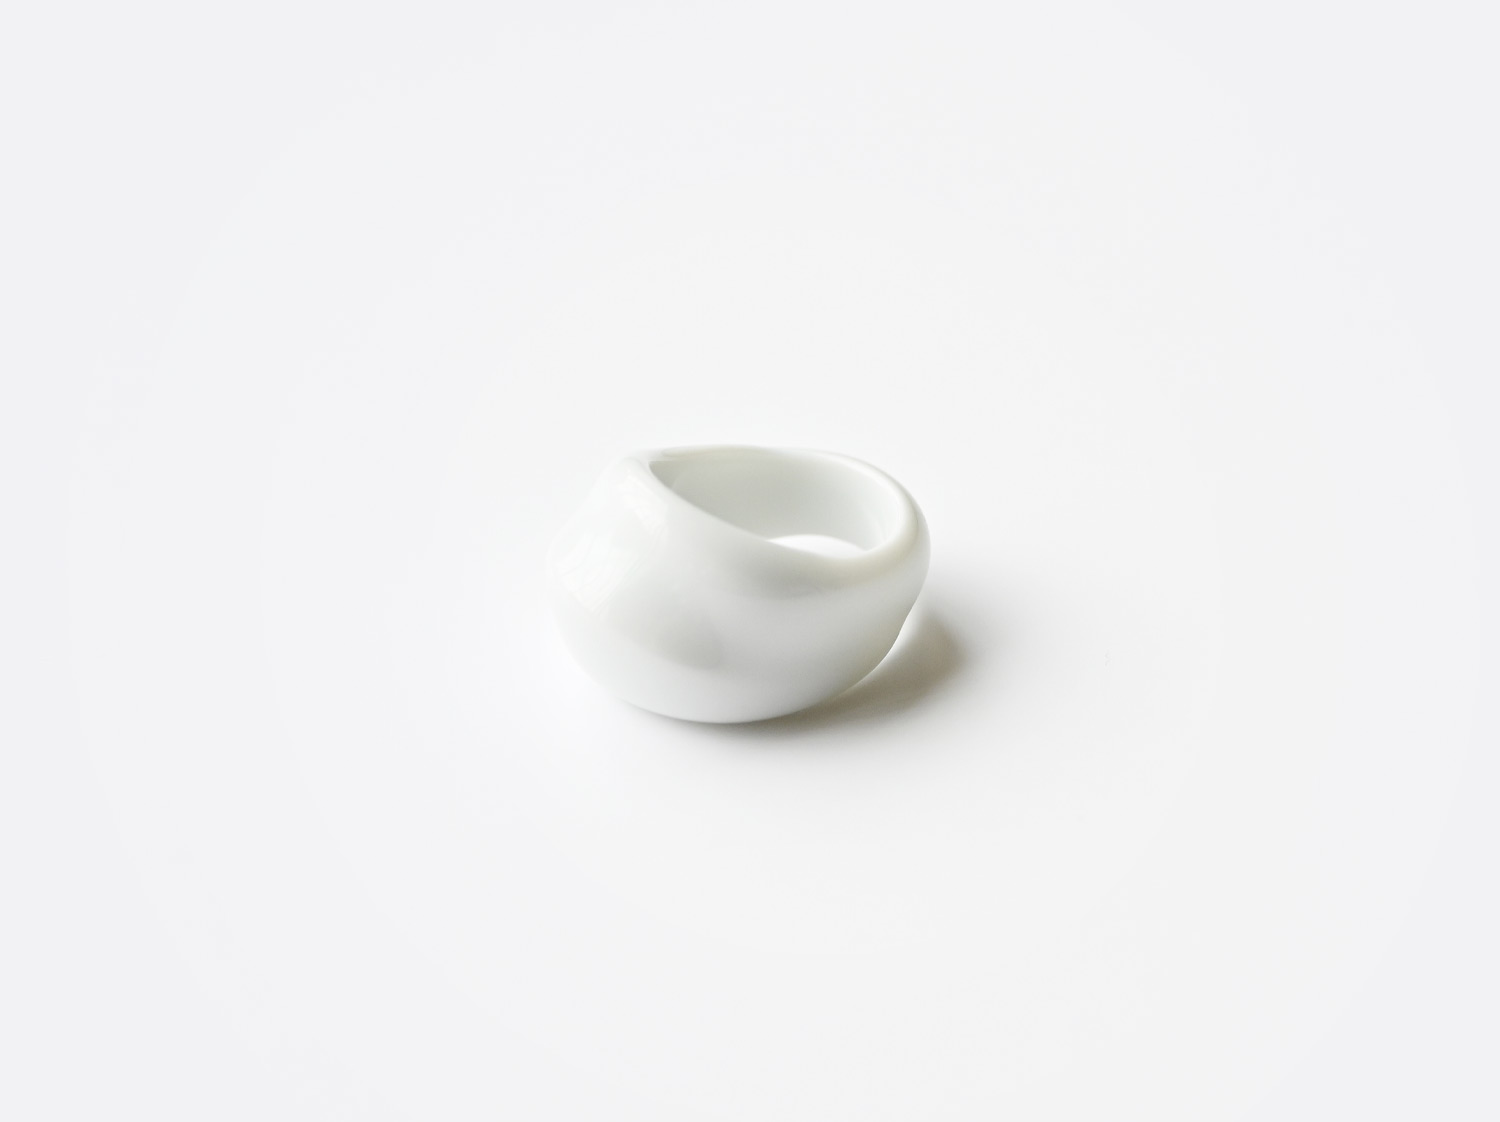 Bague Eve blanc en porcelaine de la collection EVE BLANC Bernardaud